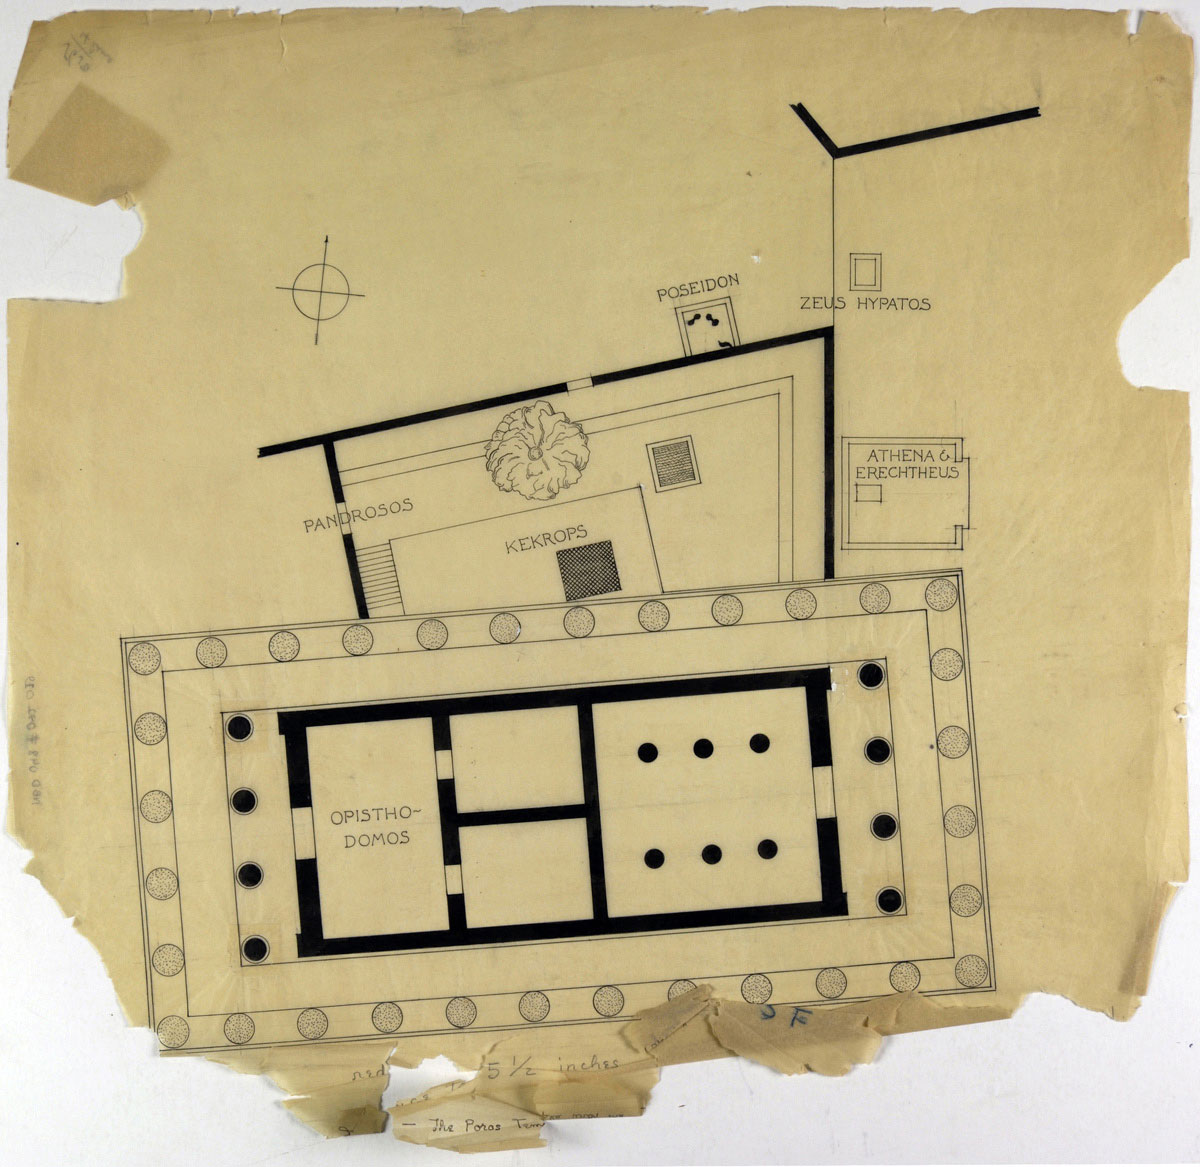 Εικ. 11. Αρχιτεκτονικό σχέδιο (1930-1940) του William Bell Dinsmoor, το οποίο ανήκει στην Αμερικανική Σχολή Κλασικών Σπουδών. Πριν από την ολοκλήρωση των εργασιών συντήρησης (φωτ. Μουσείο Μπενάκη).